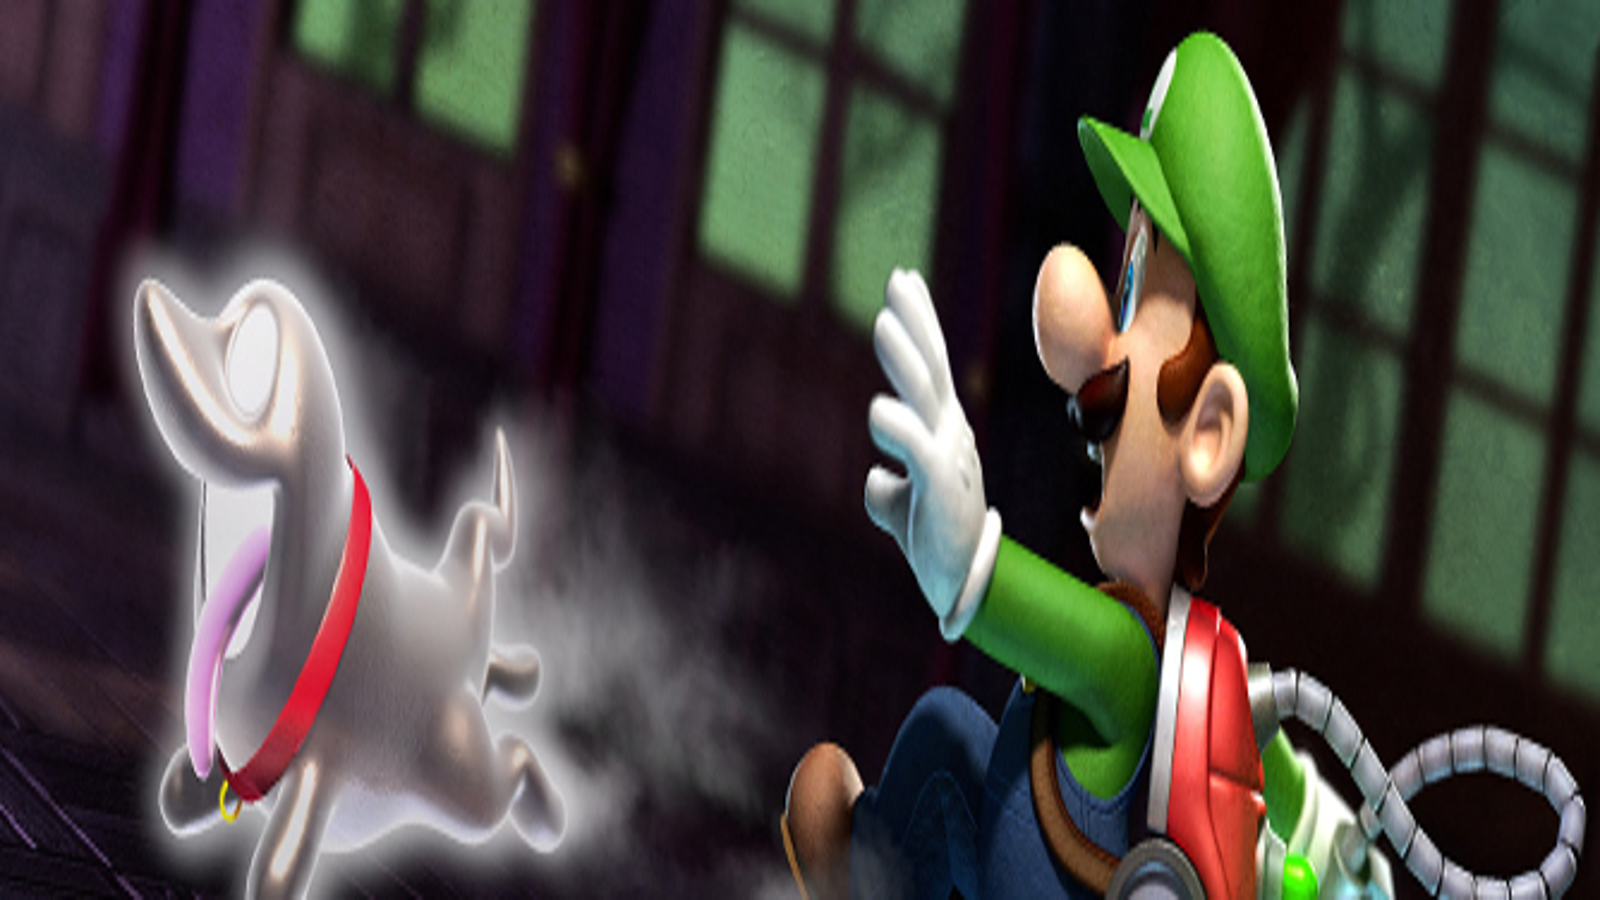 Luigi's Mansion: Dark Moon Features Online Connectivity - My